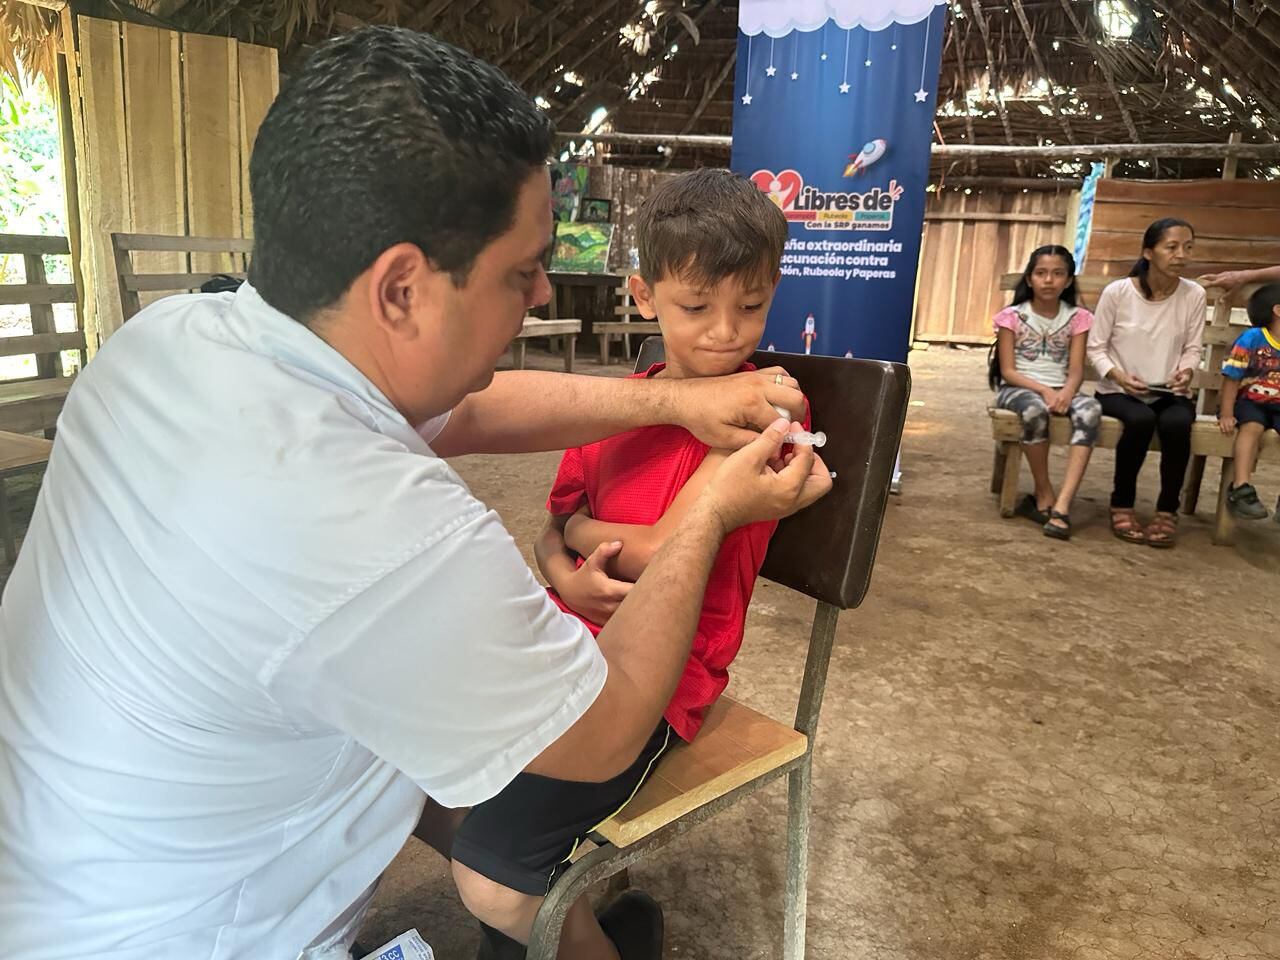 La comunidad indígena maleku fue visitada recientemente por el Área de Salud de Guatuso para vacunar a los niños de entre 15 meses y menos de 10 años contra sarampión.